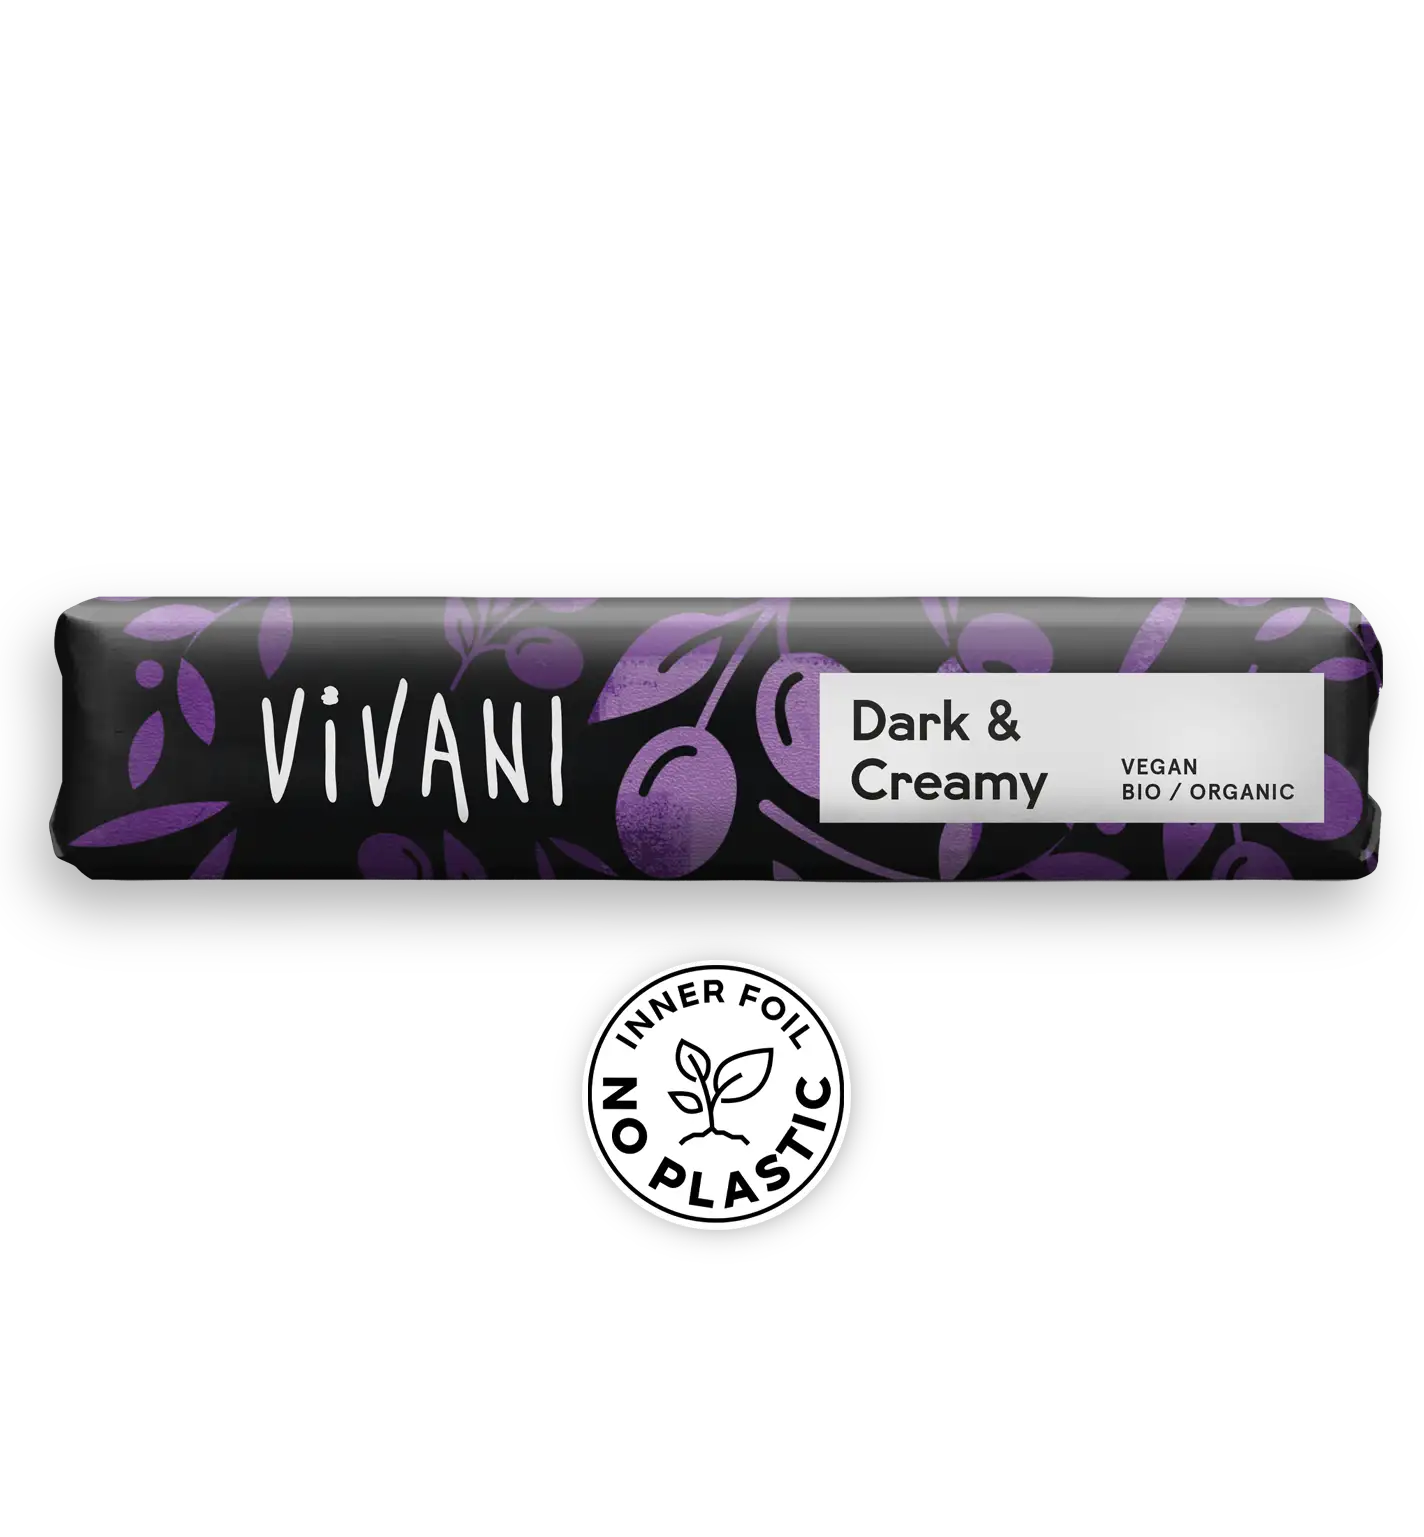 VIVANIs veganer Bio-Schokoladenriegel Dark & Creamy mit Olivenöl